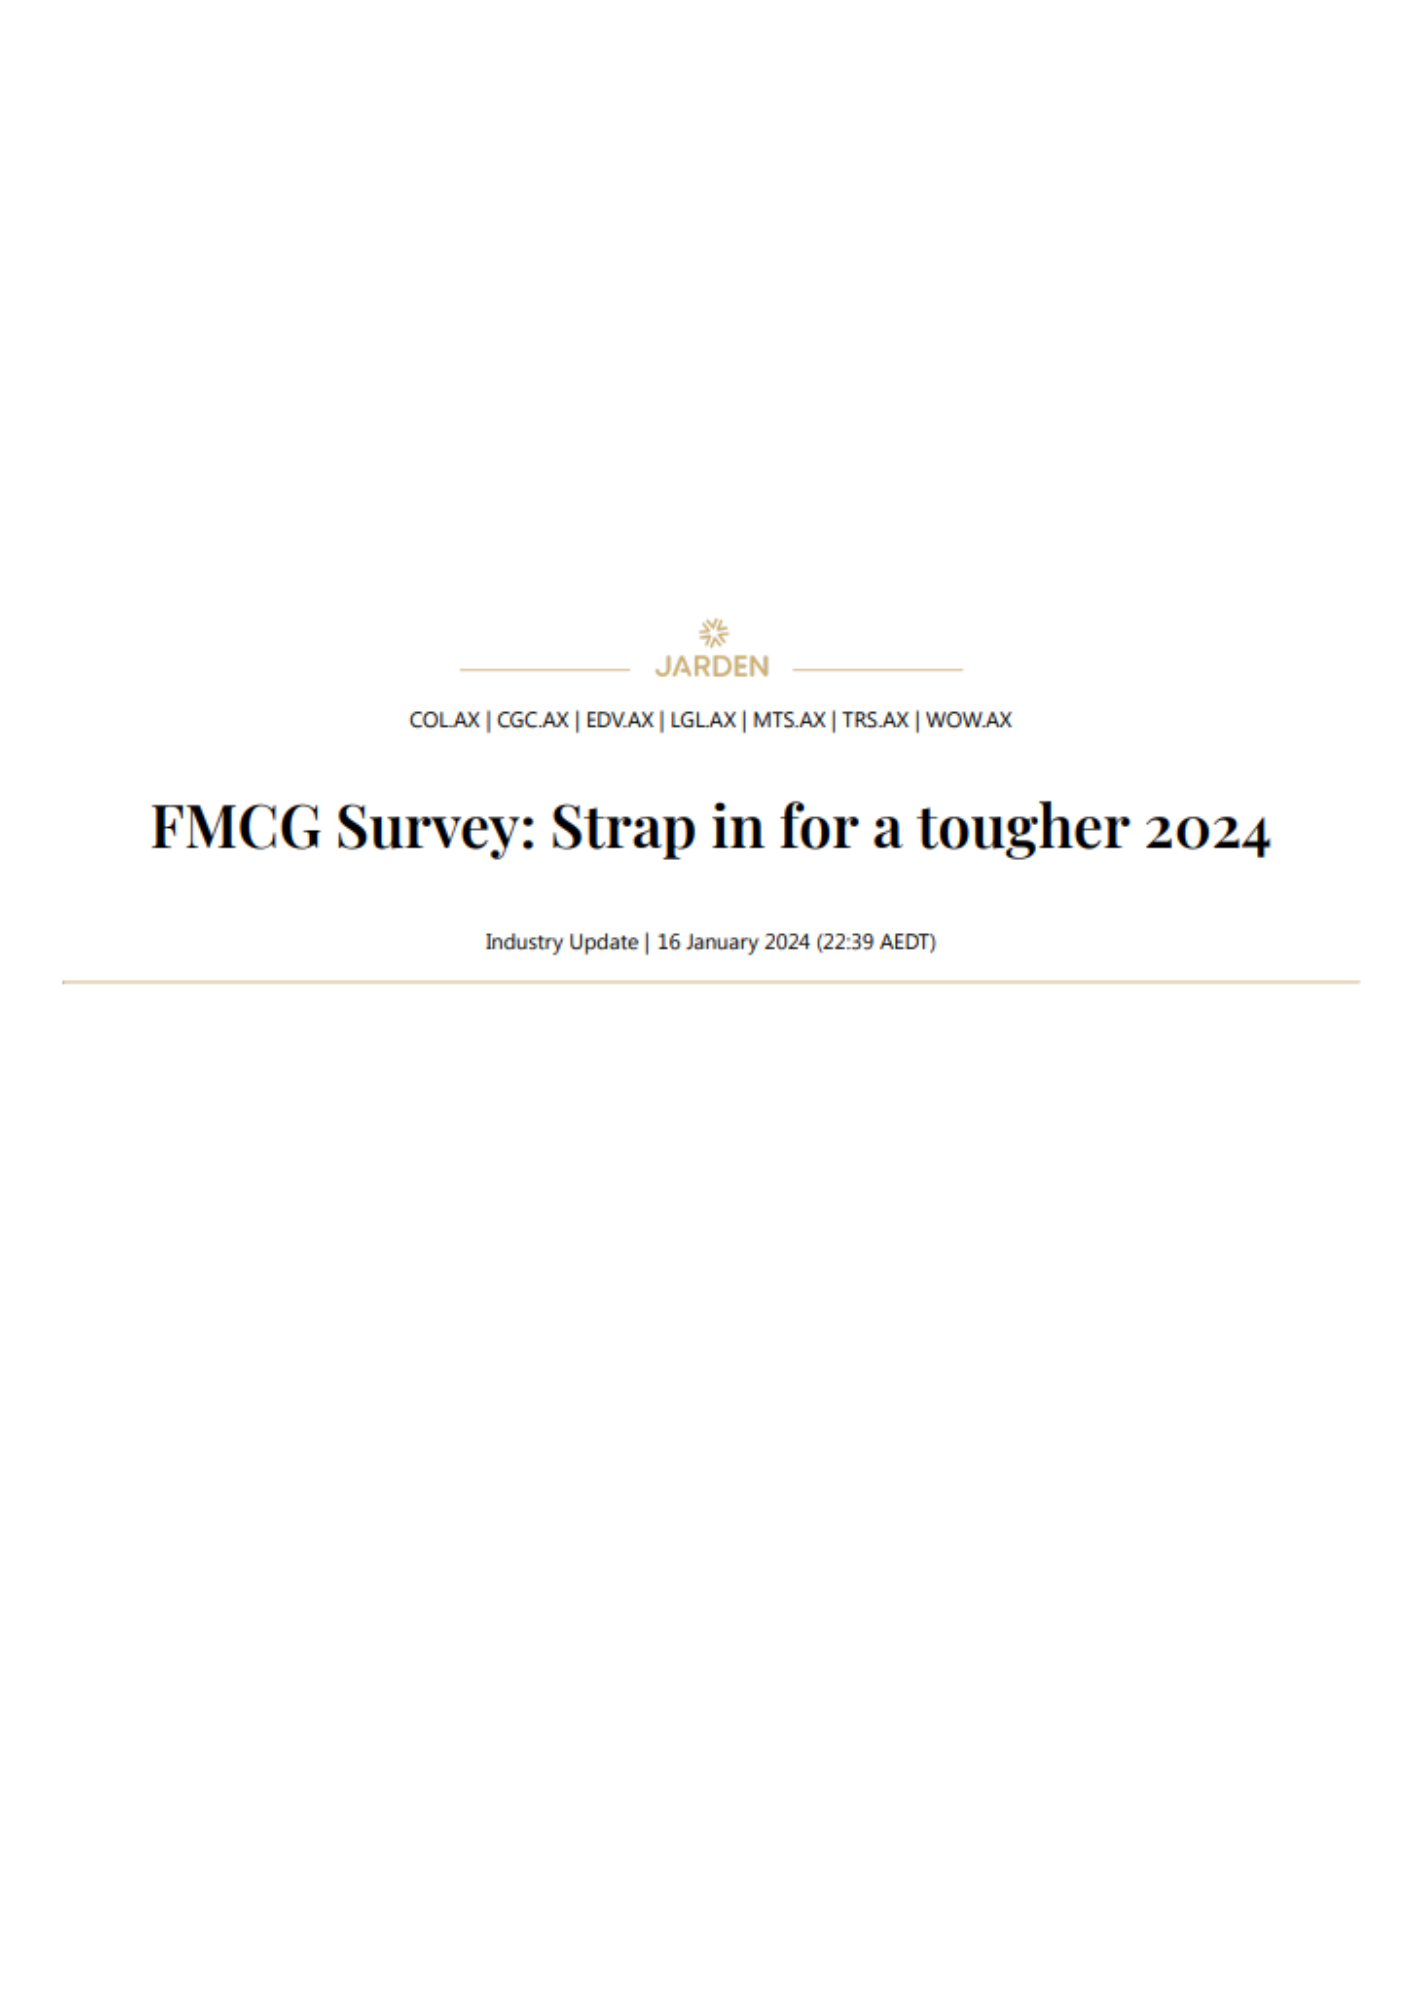 FMCG Survey image 1